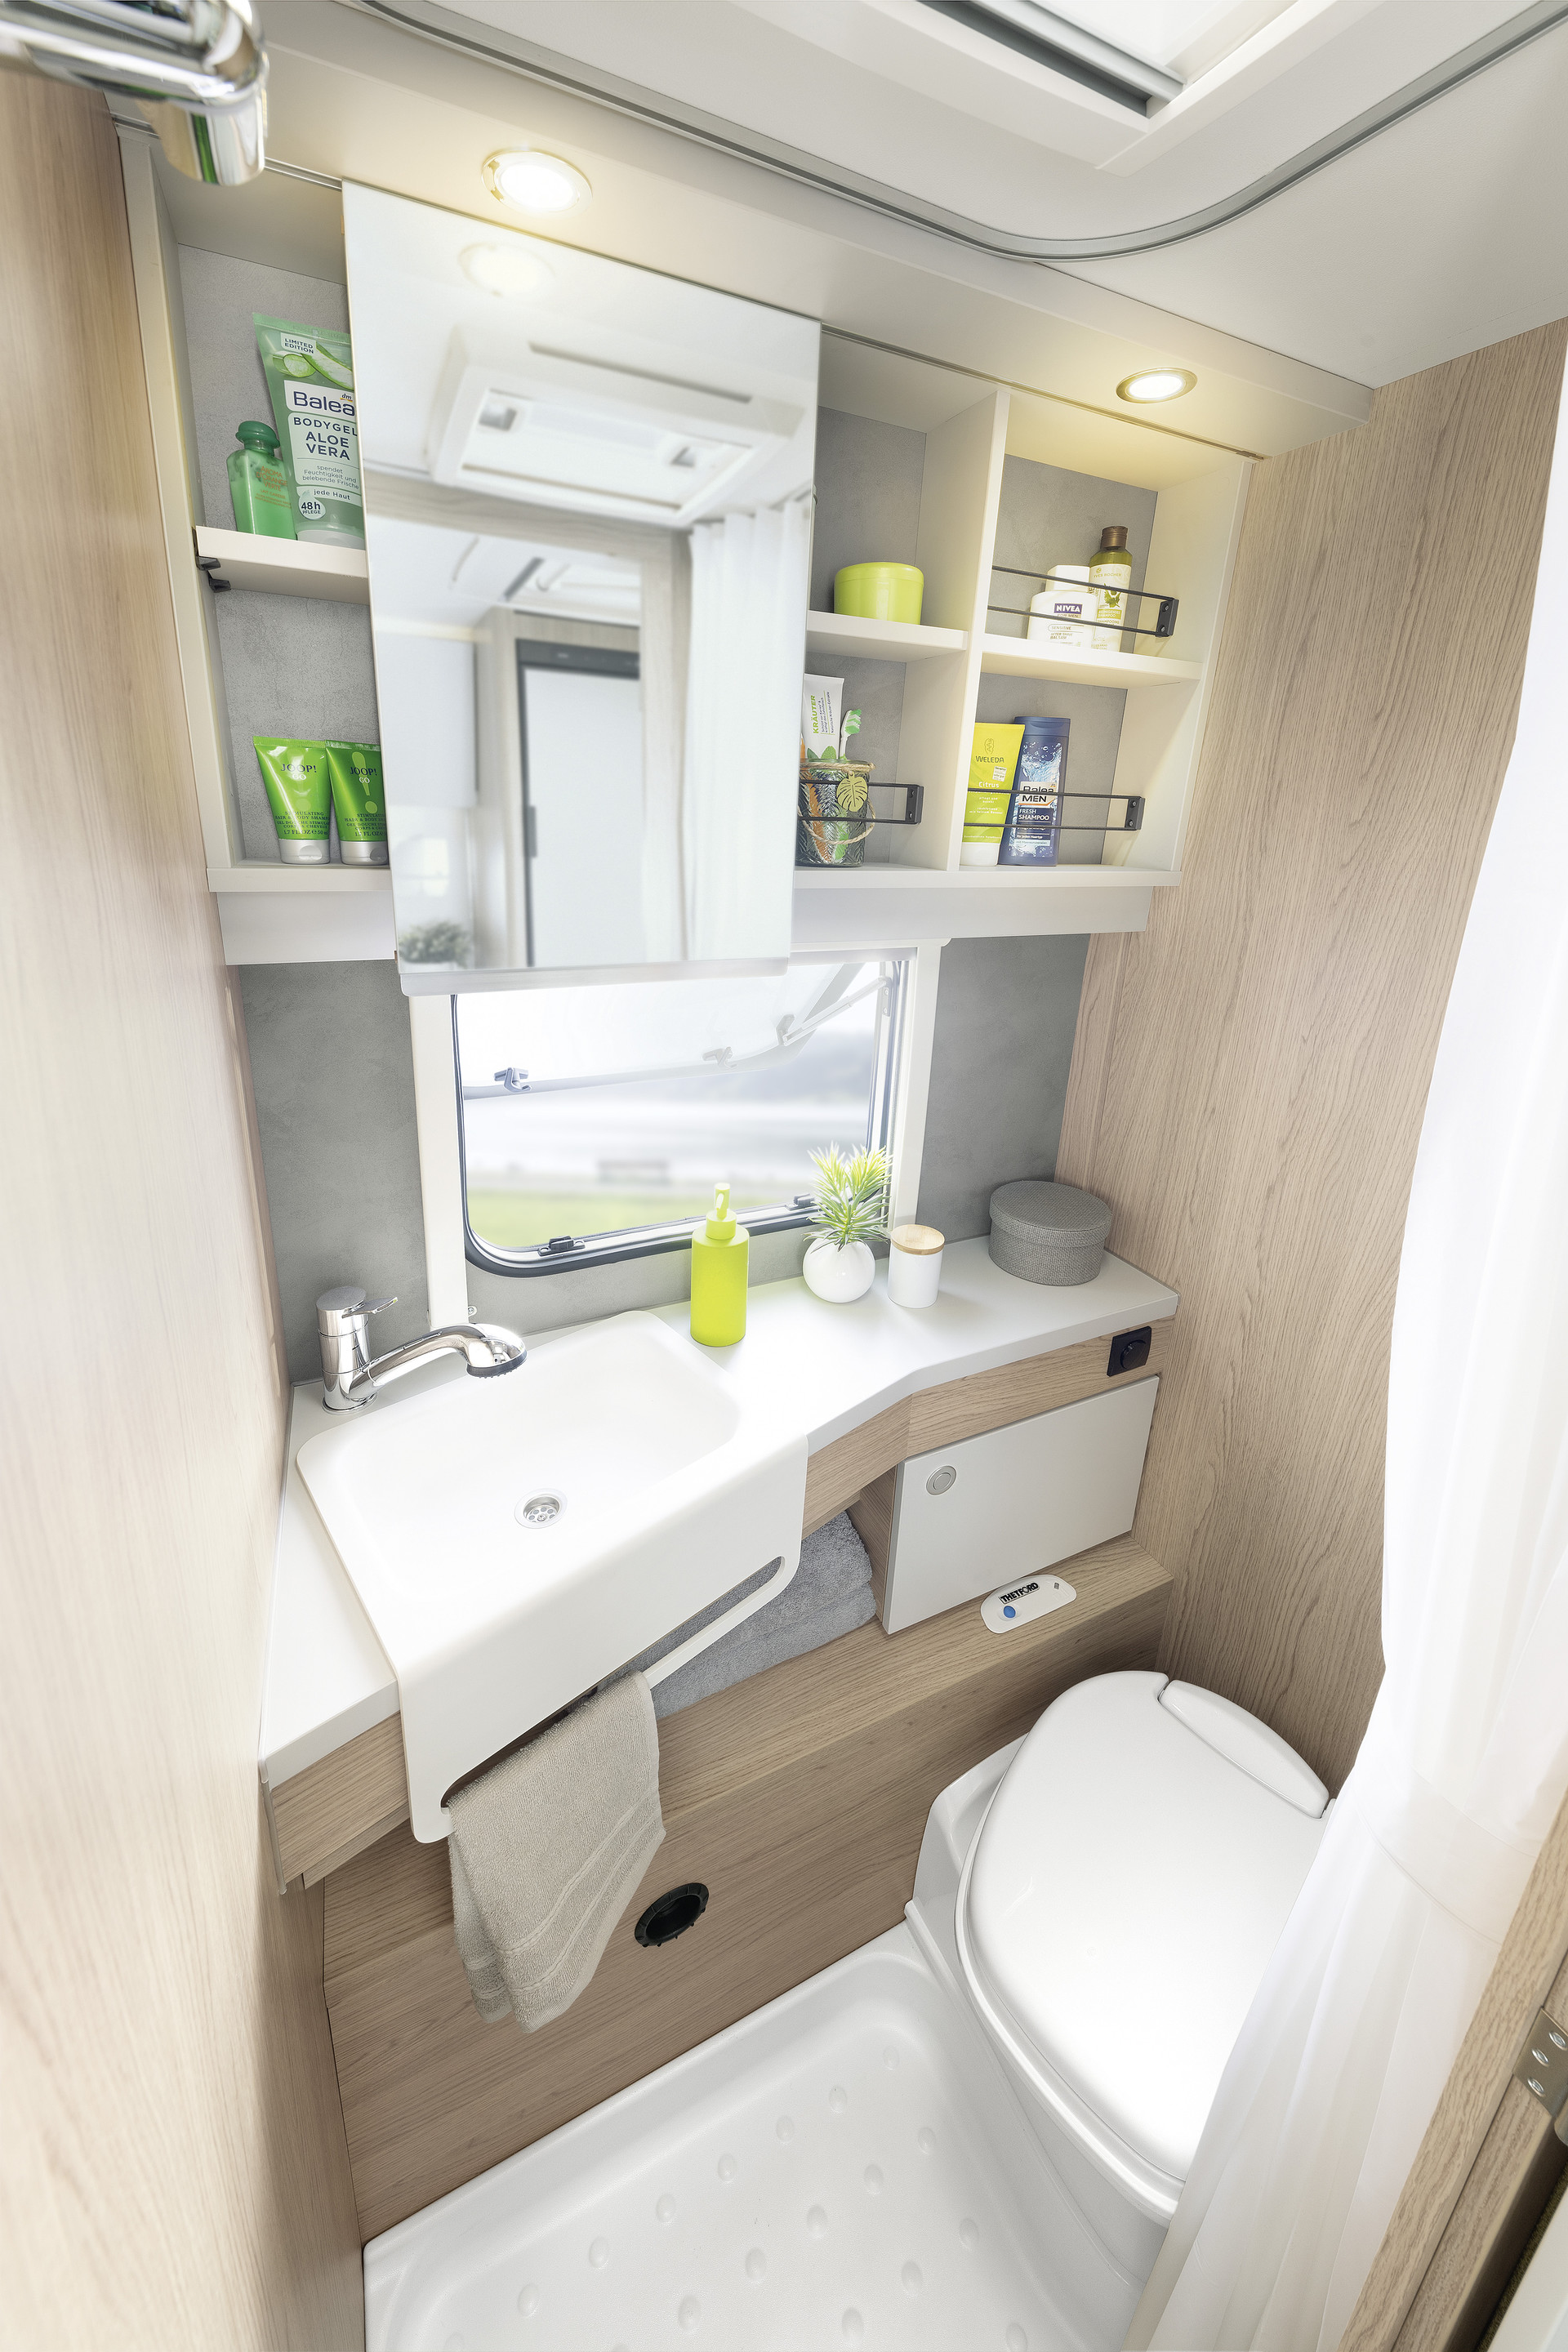 Baño compacto en colores claros y bonitos y prácticos detalles como el toallero integrado y el práctico armario con espejo • 510 ER | Skagen